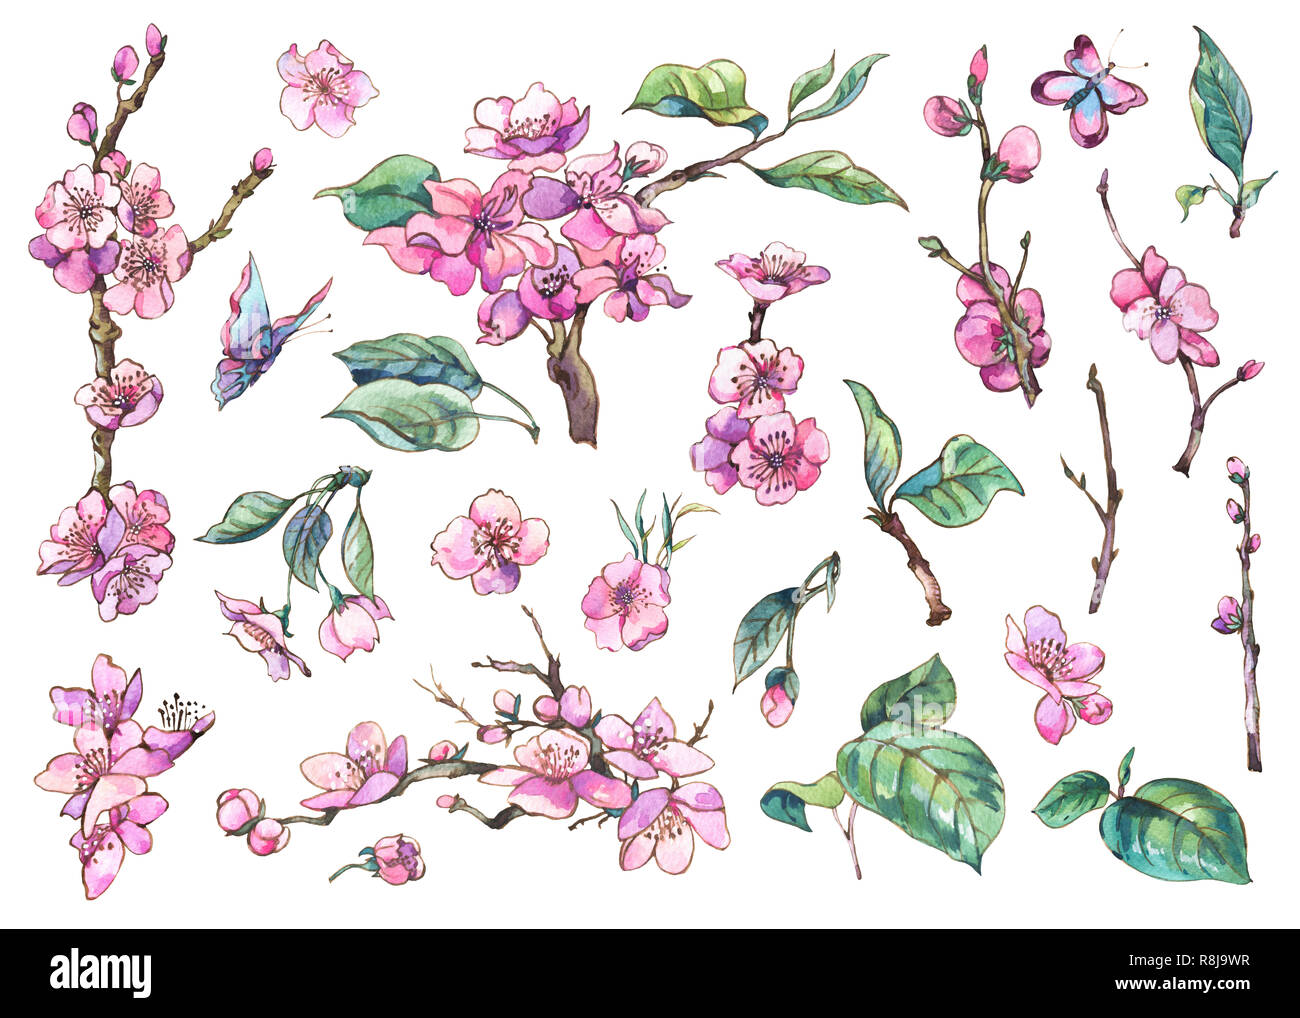 Printemps aquarelle ensemble d'éléments floraux vintage cherry de branches en fleurs pêche, poire, sakura, pommiers et papillons, fleurs botaniques isolés Banque D'Images